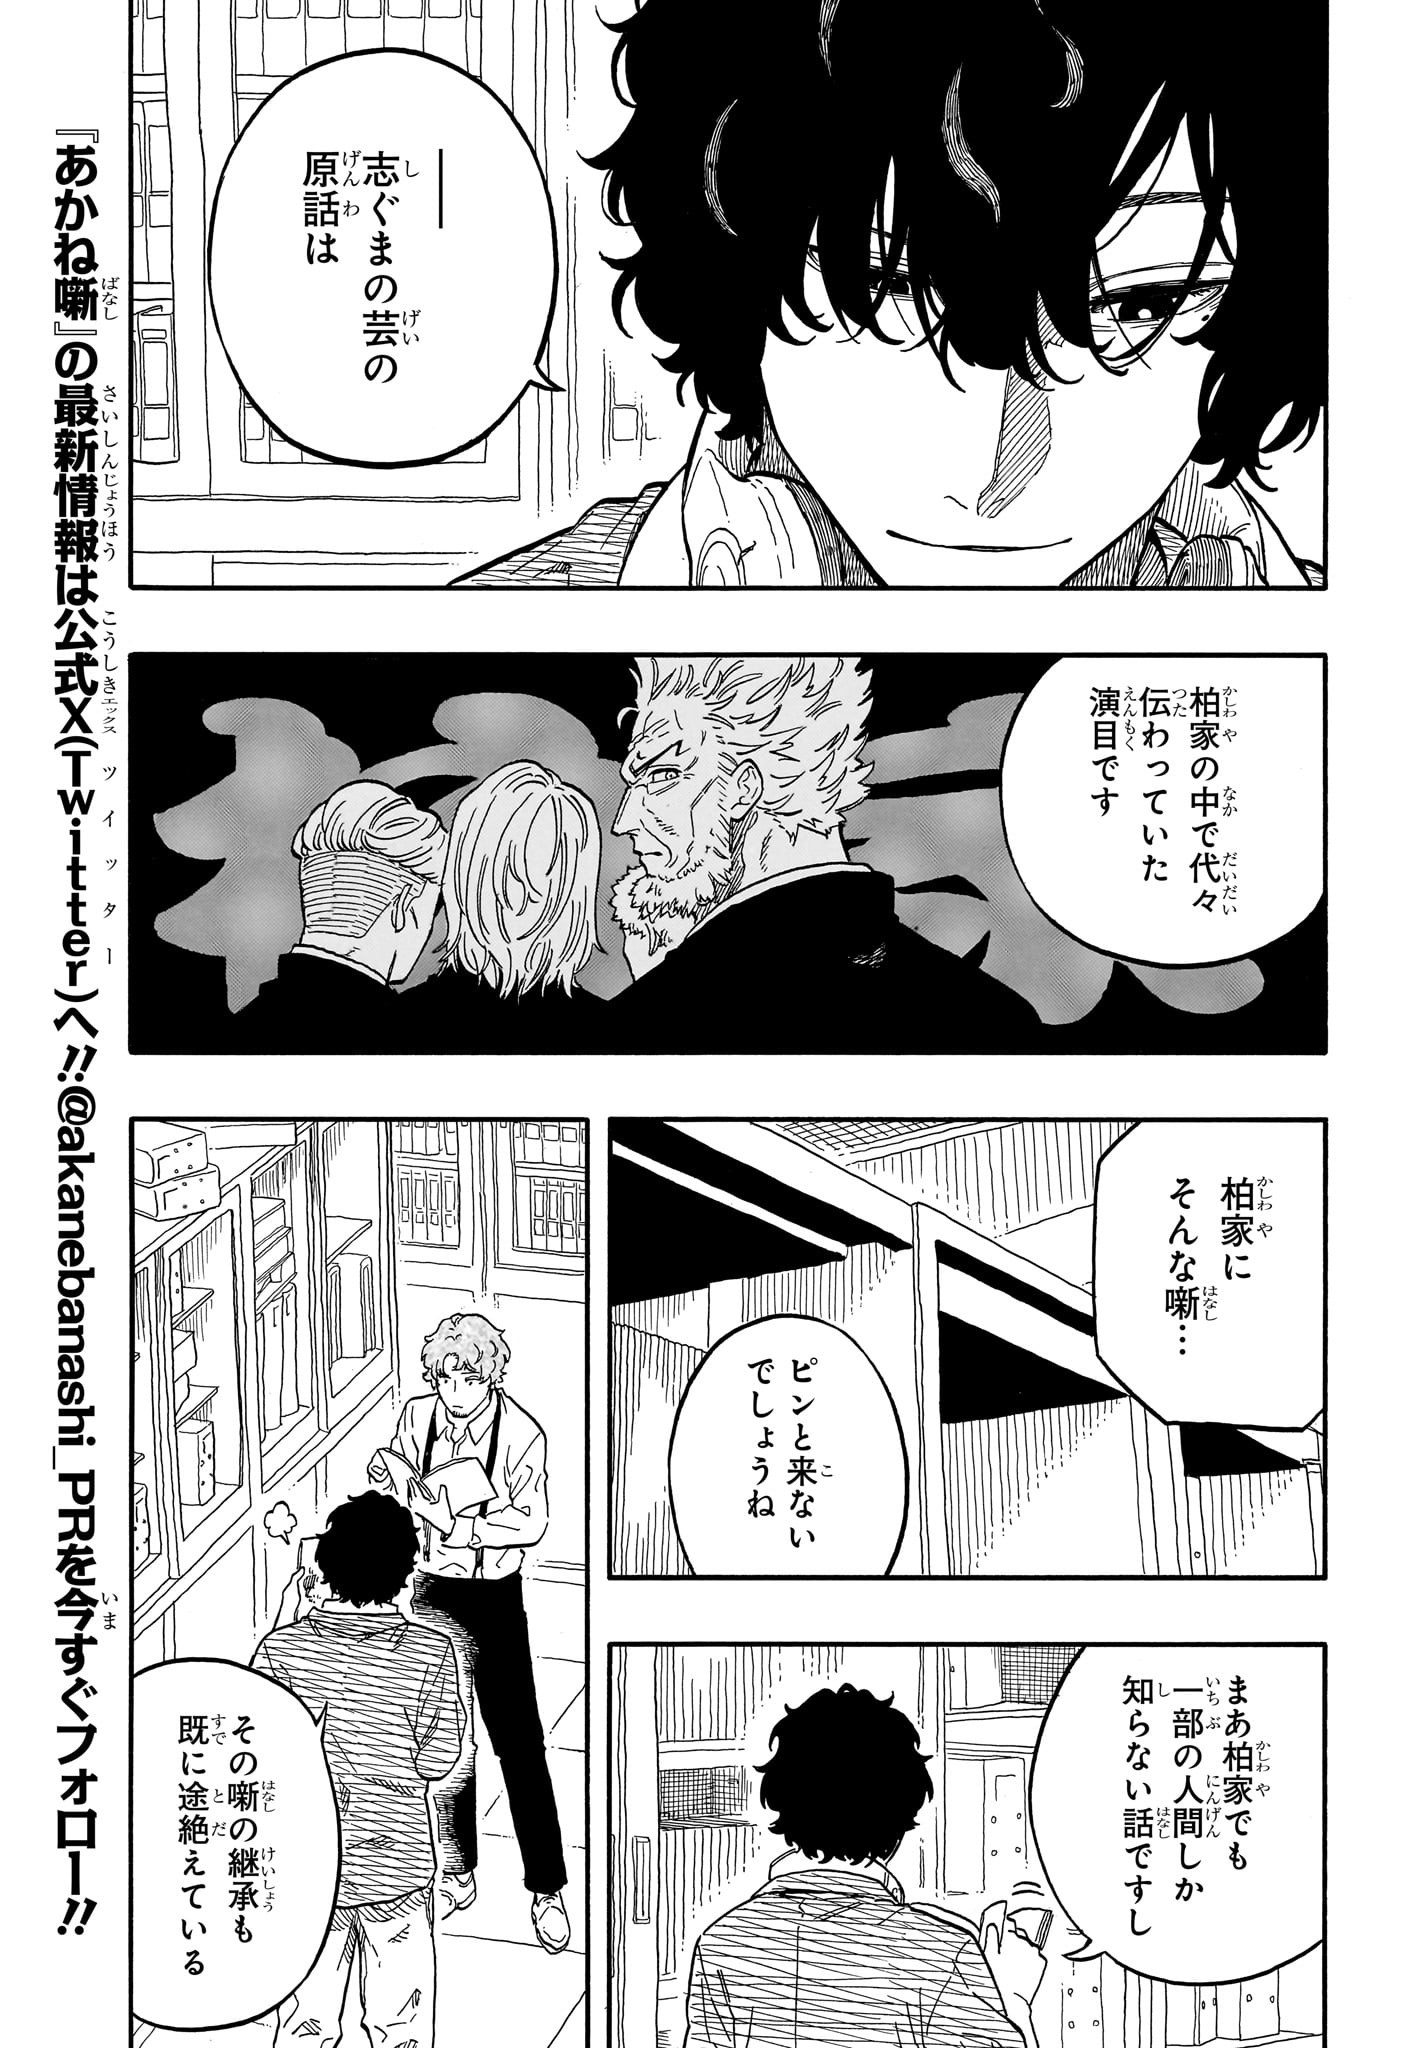 Akane-Banashi - Chapter 118 - Page 5